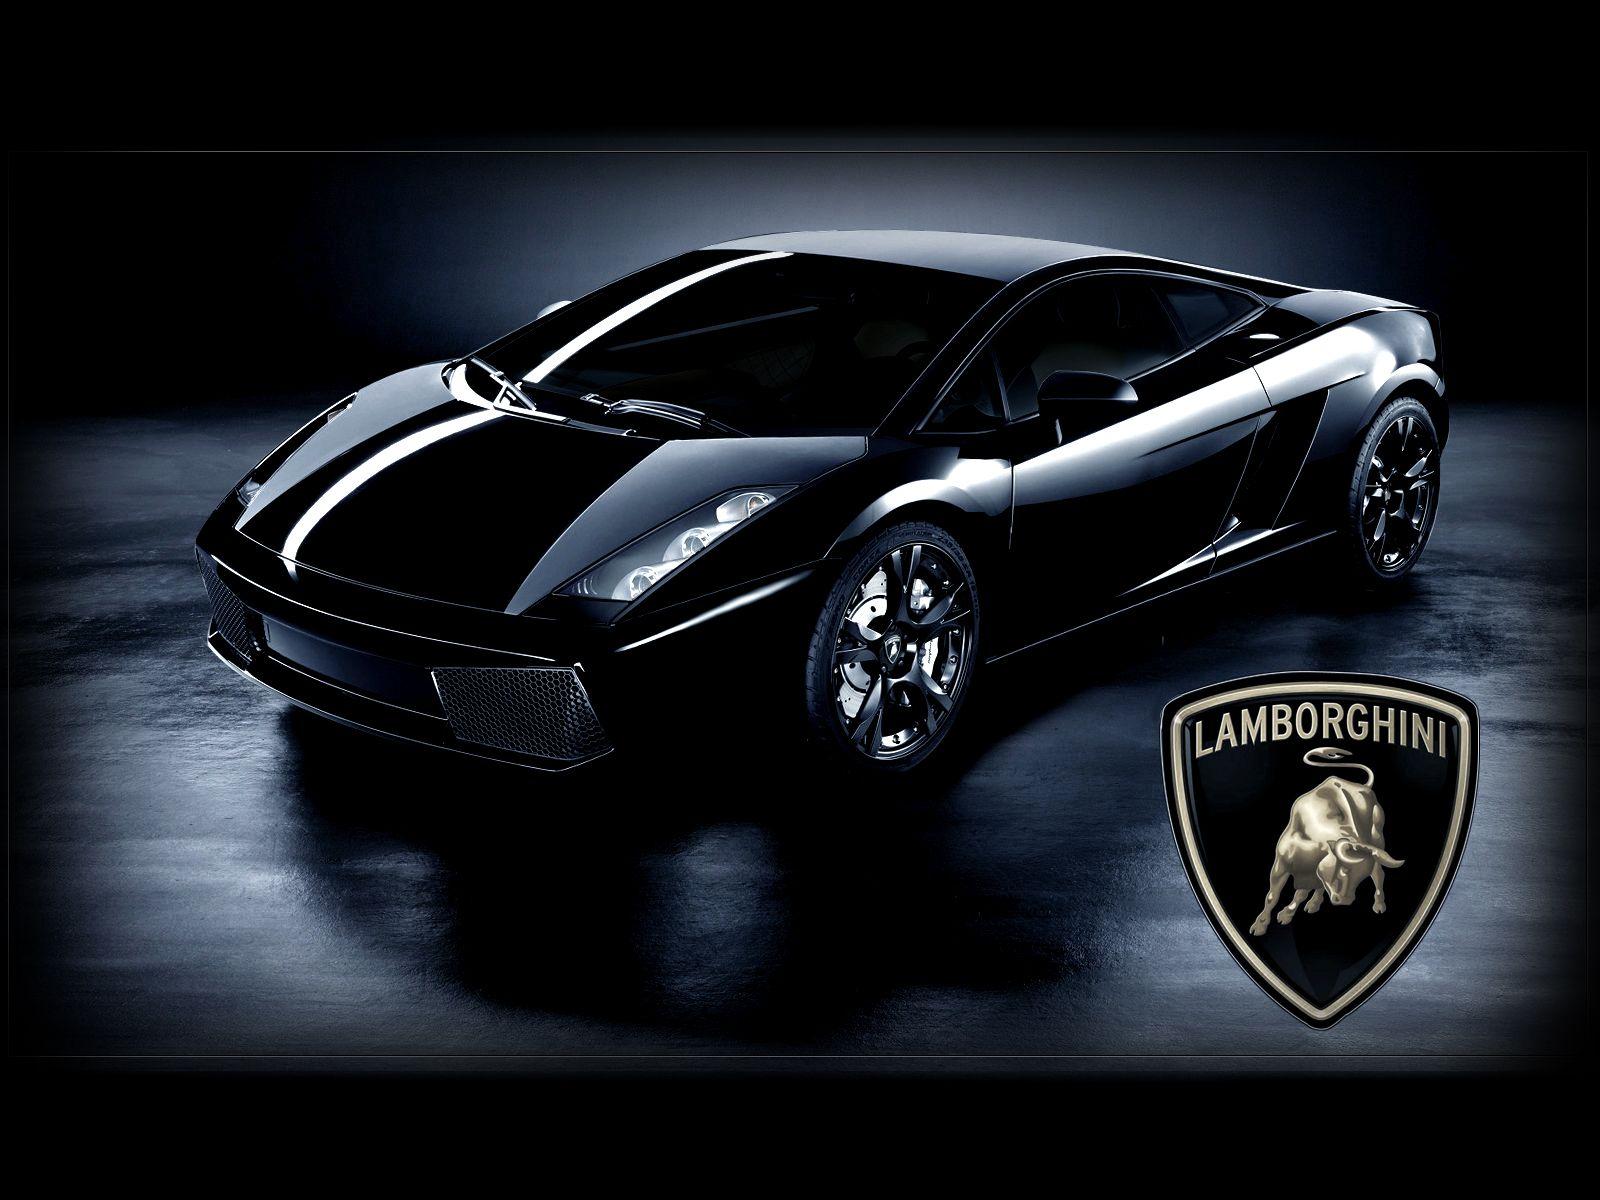 Lamborghini Gallardo Wallpaper Image Photo Picture Background